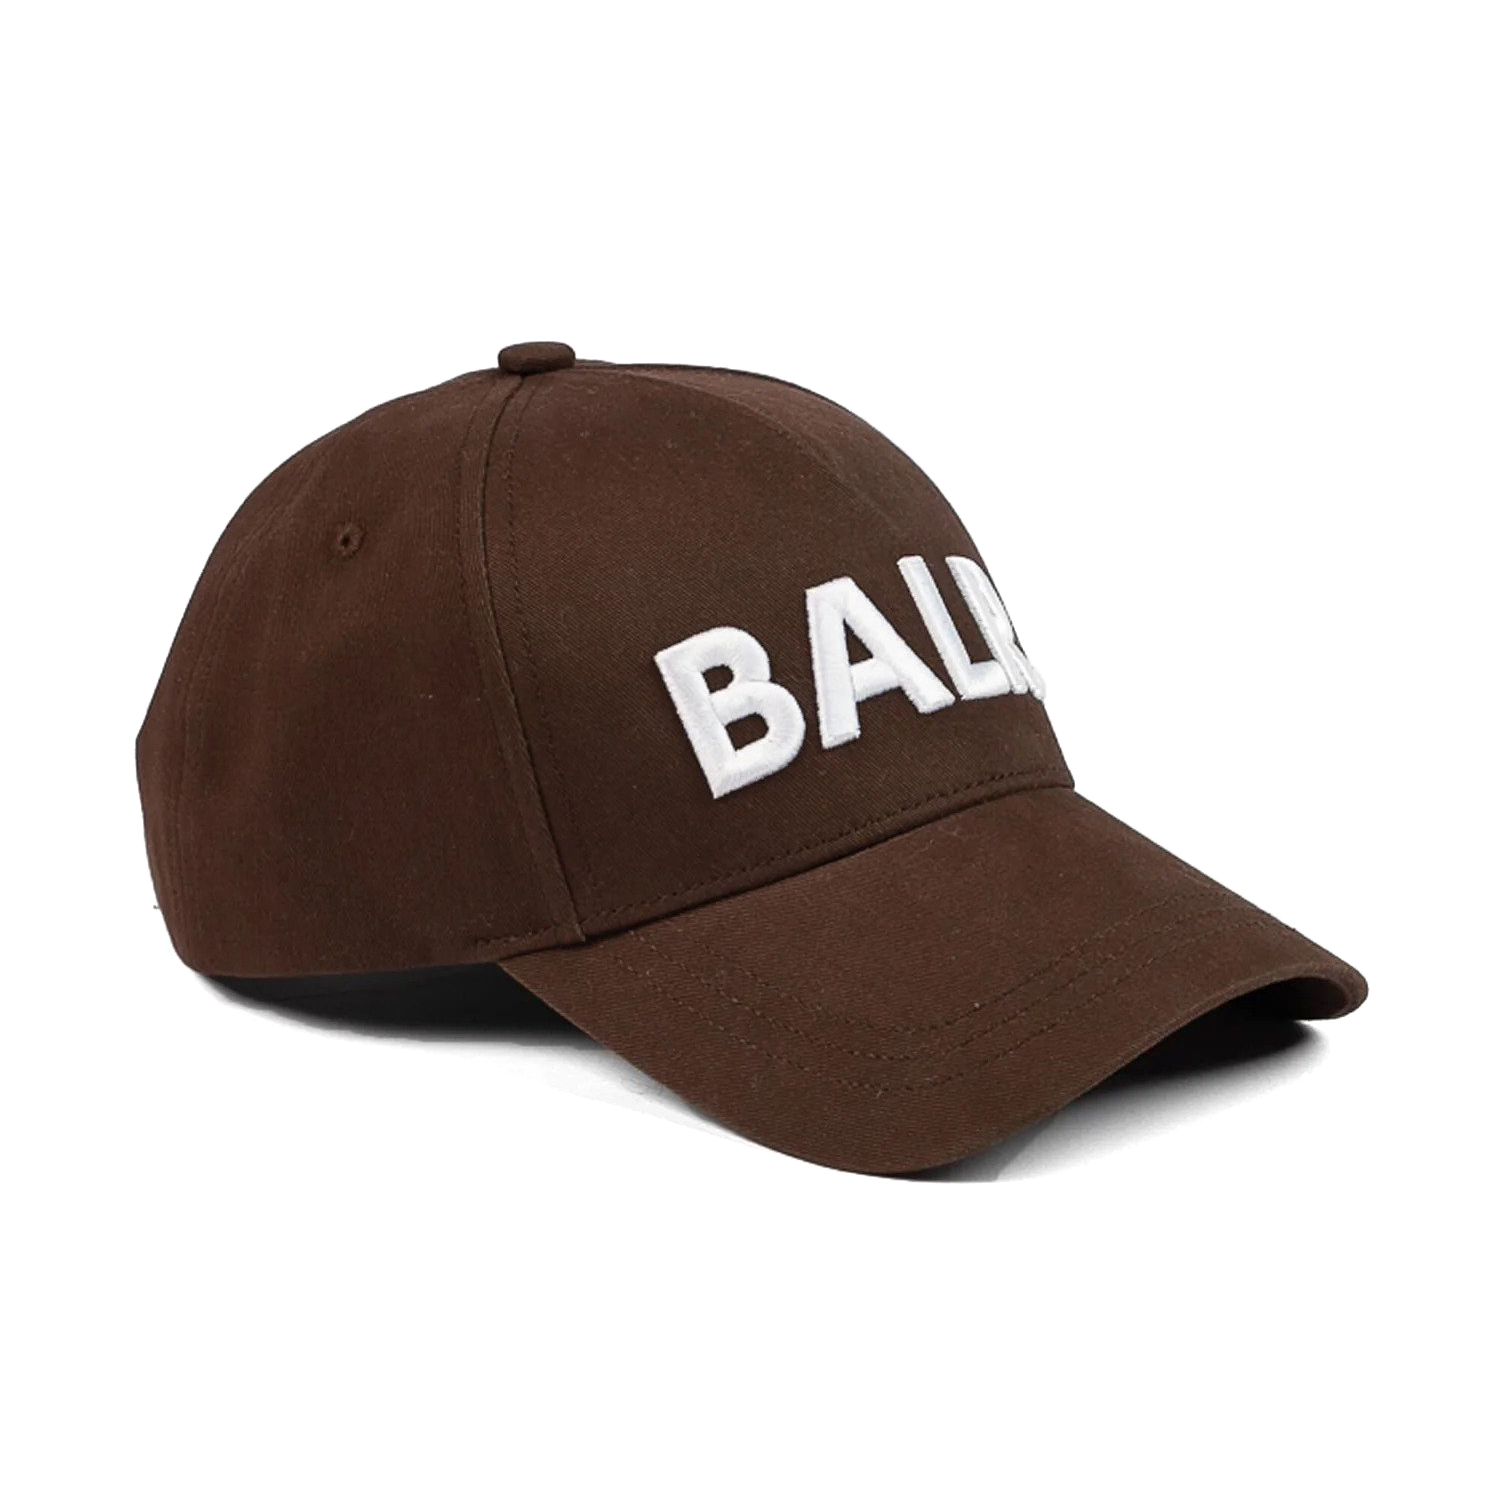 Afbeelding van BALR. Classic embro cap